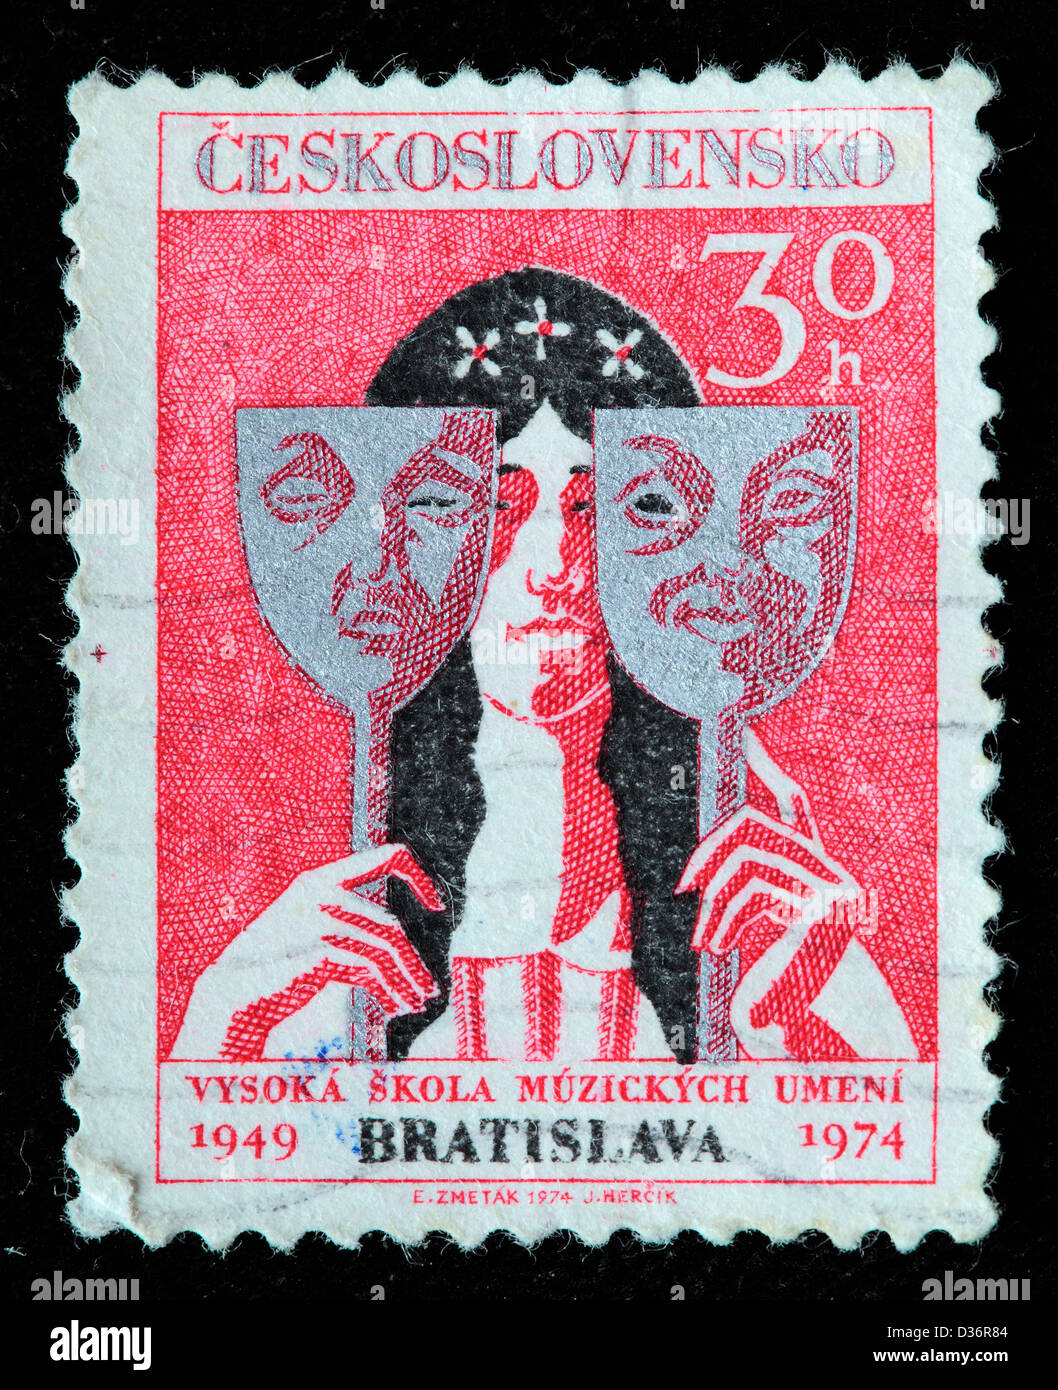 La actriz con máscaras de comedia y tragedia, sello, Checoslovaquia, 1974 Foto de stock